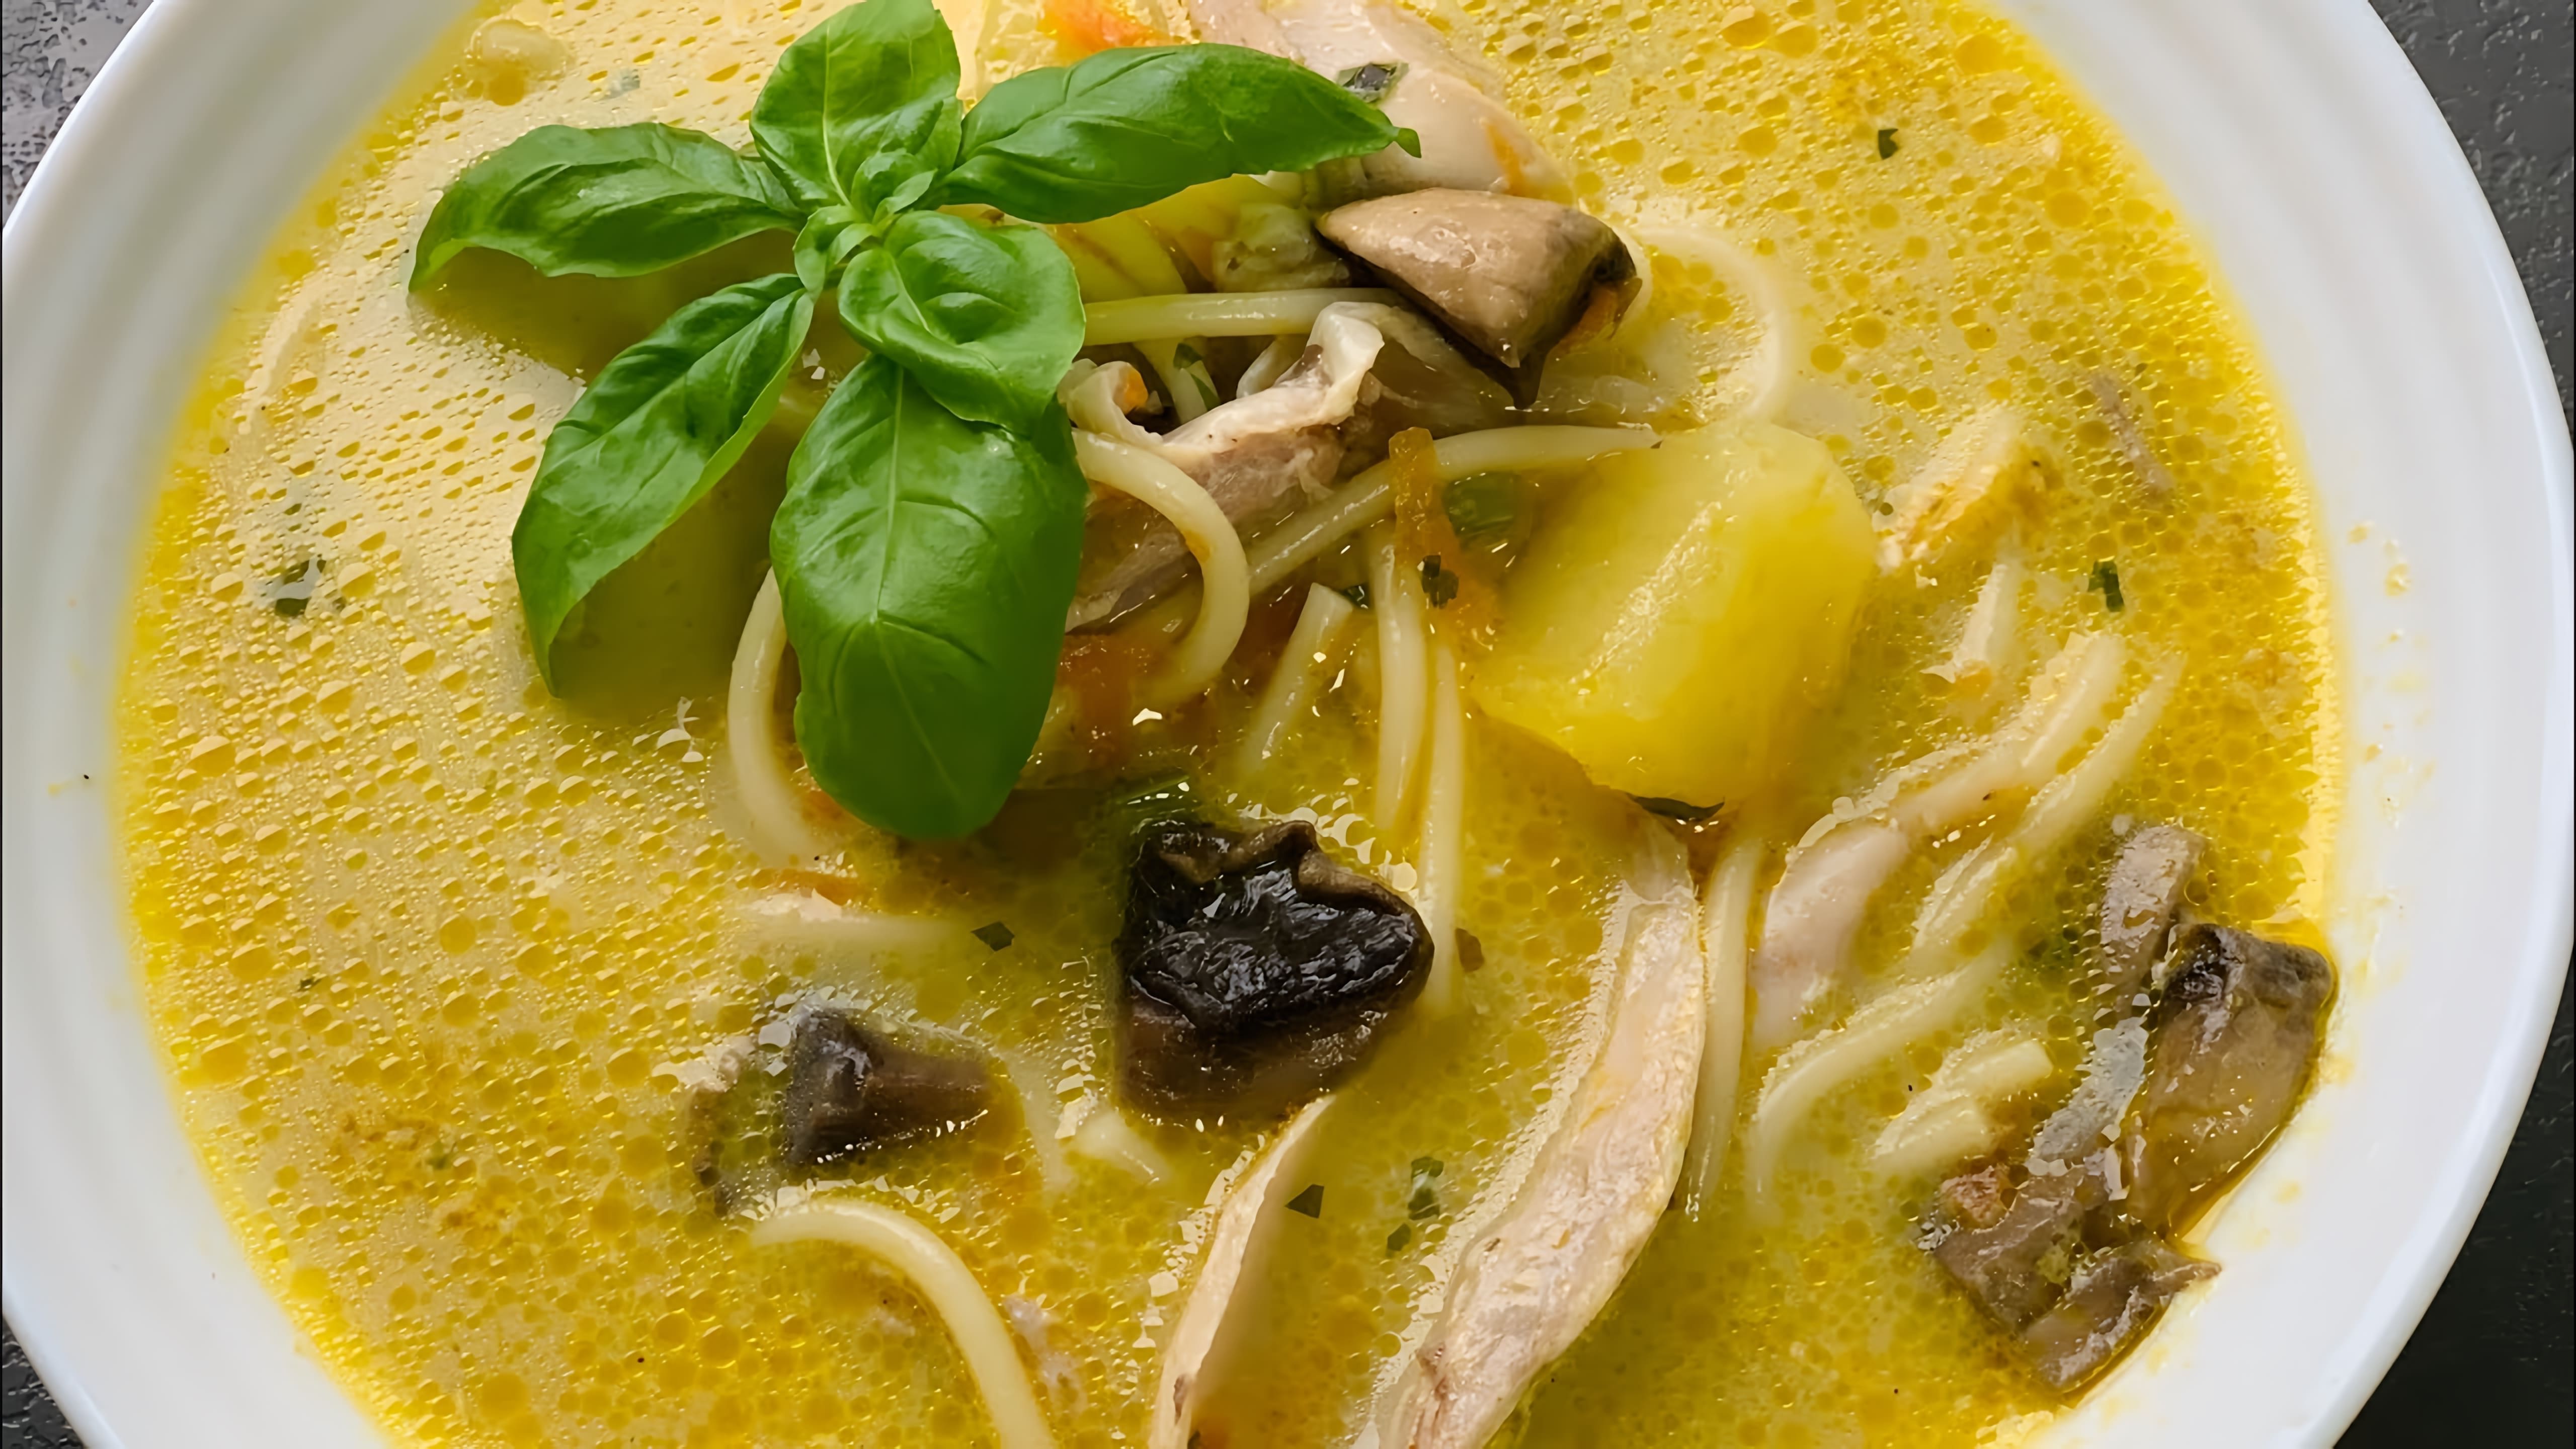 В этом видео демонстрируется процесс приготовления вкусного грибного супа с курицей